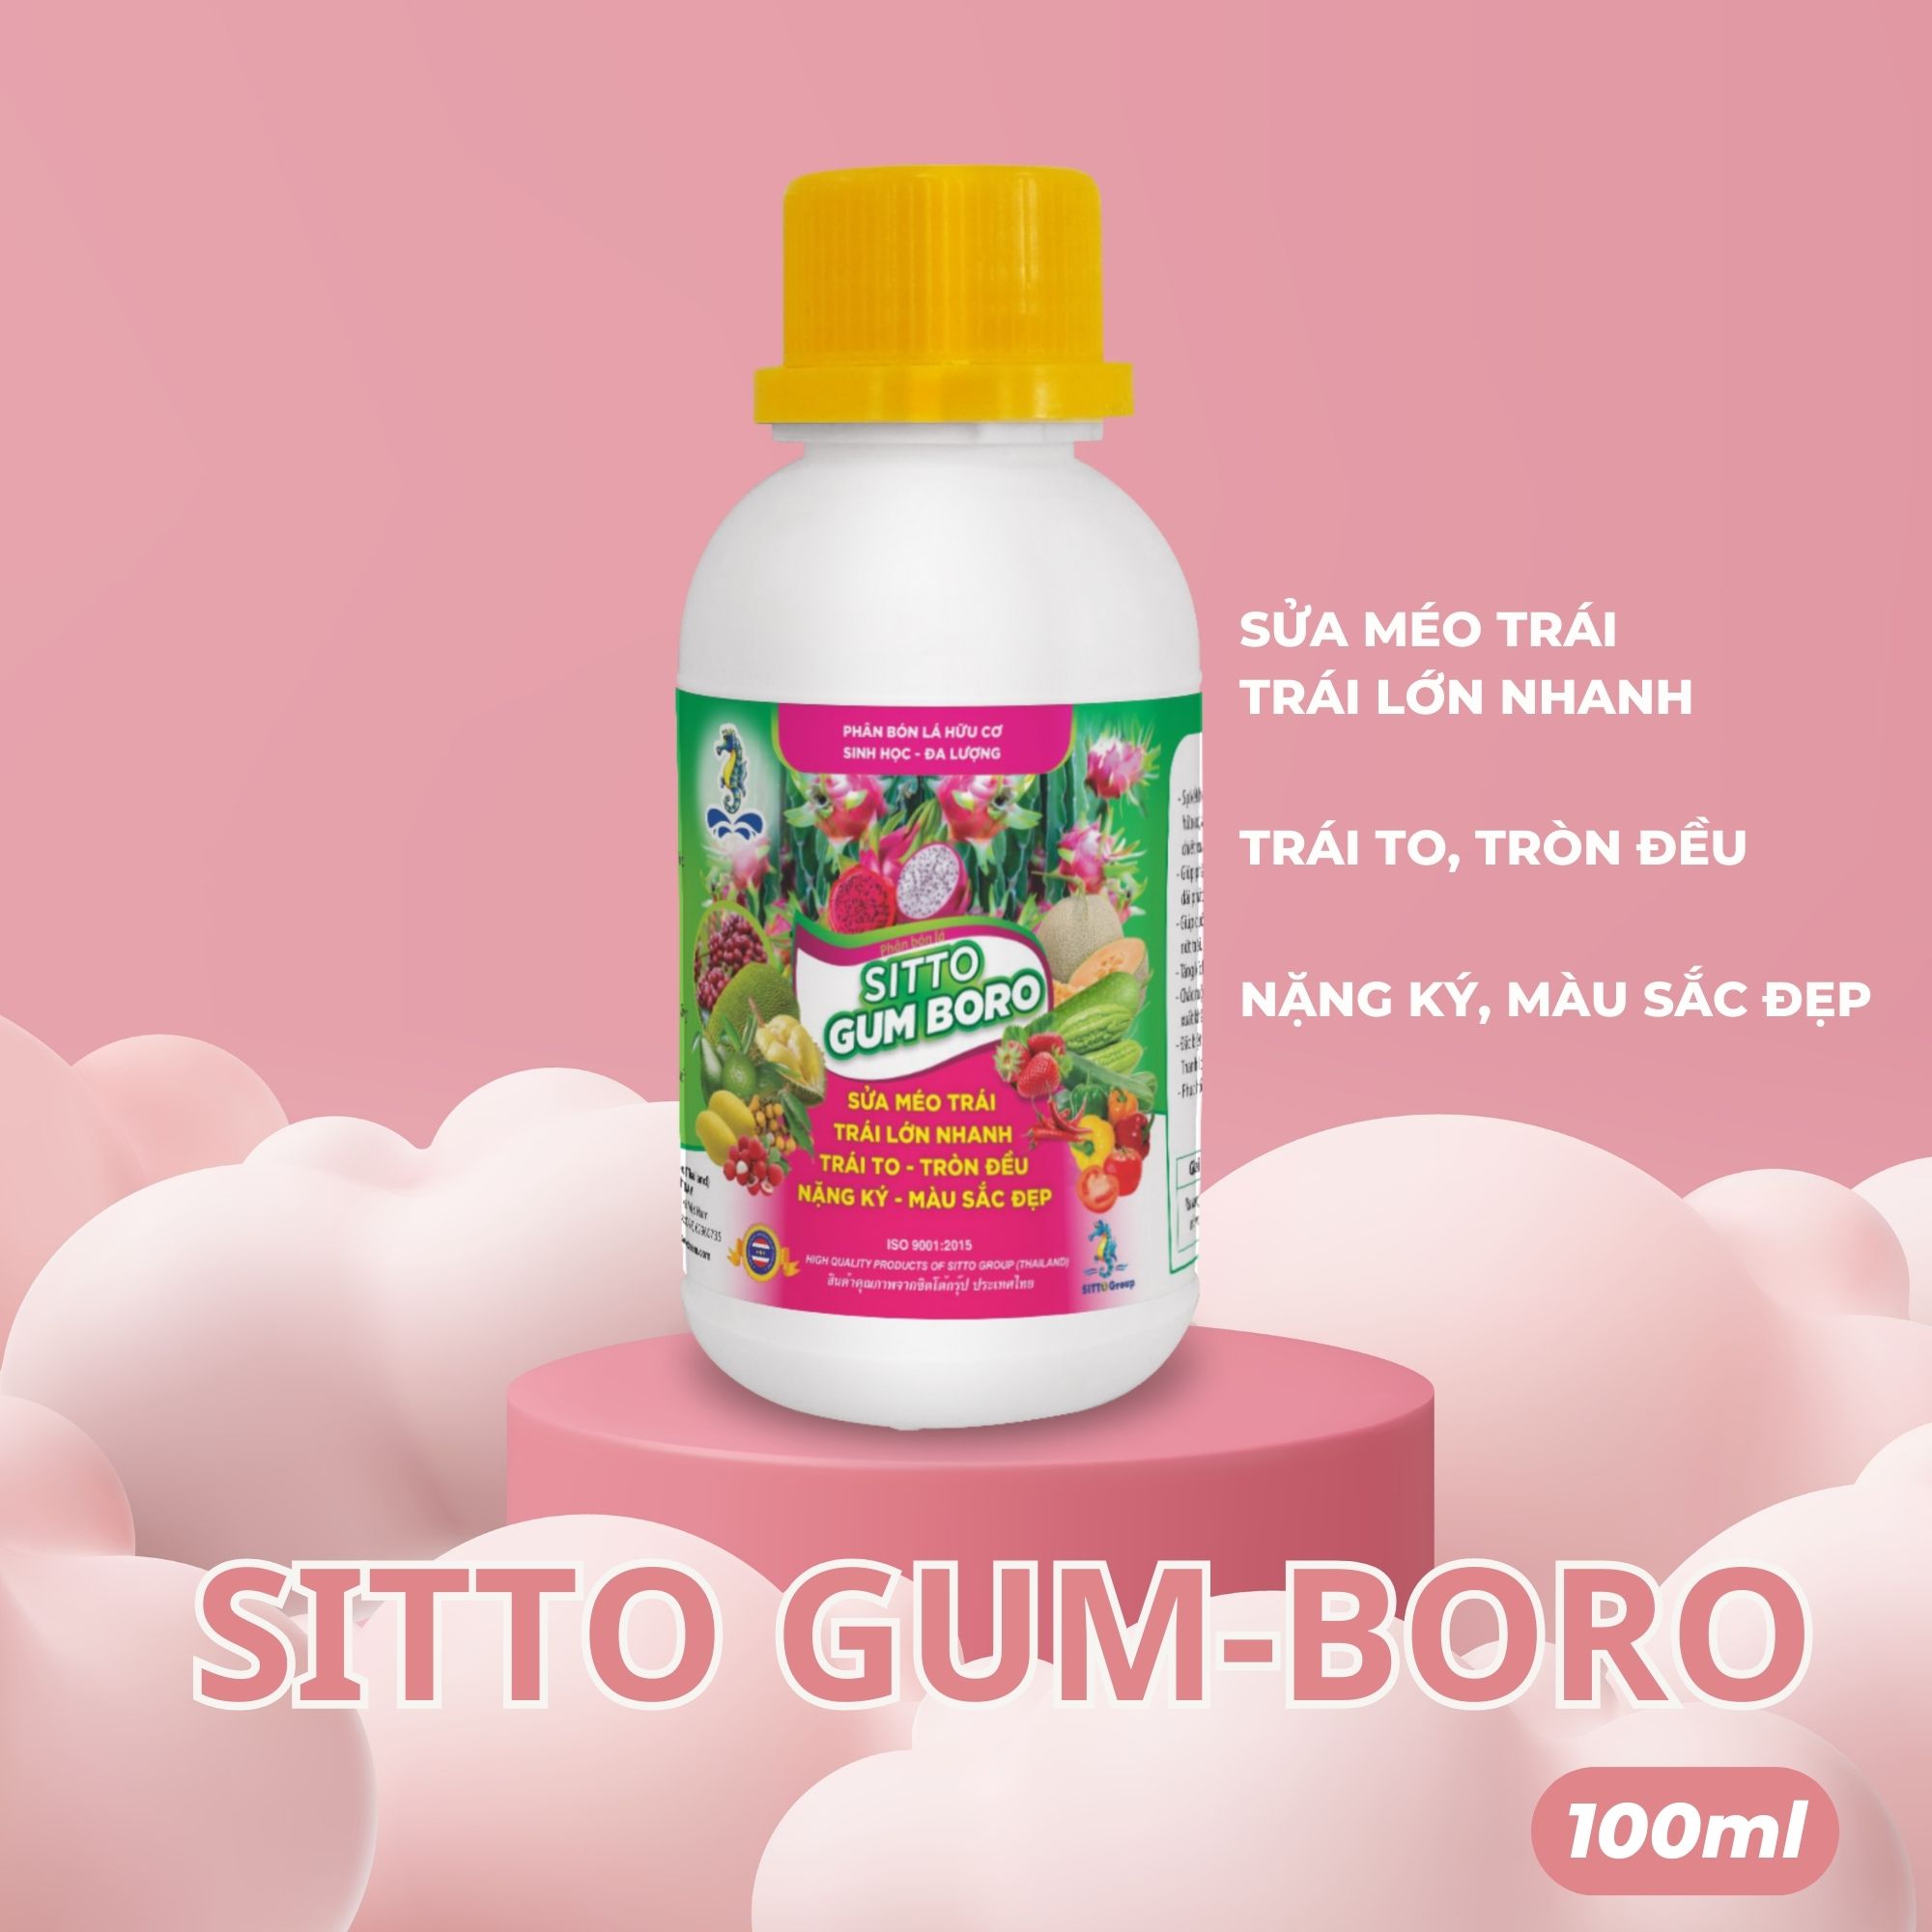 Sitto Gum-Boro (Chai 100 ml) - Sửa méo trái, Trái lớn nhanh - Trái to, tròn đều